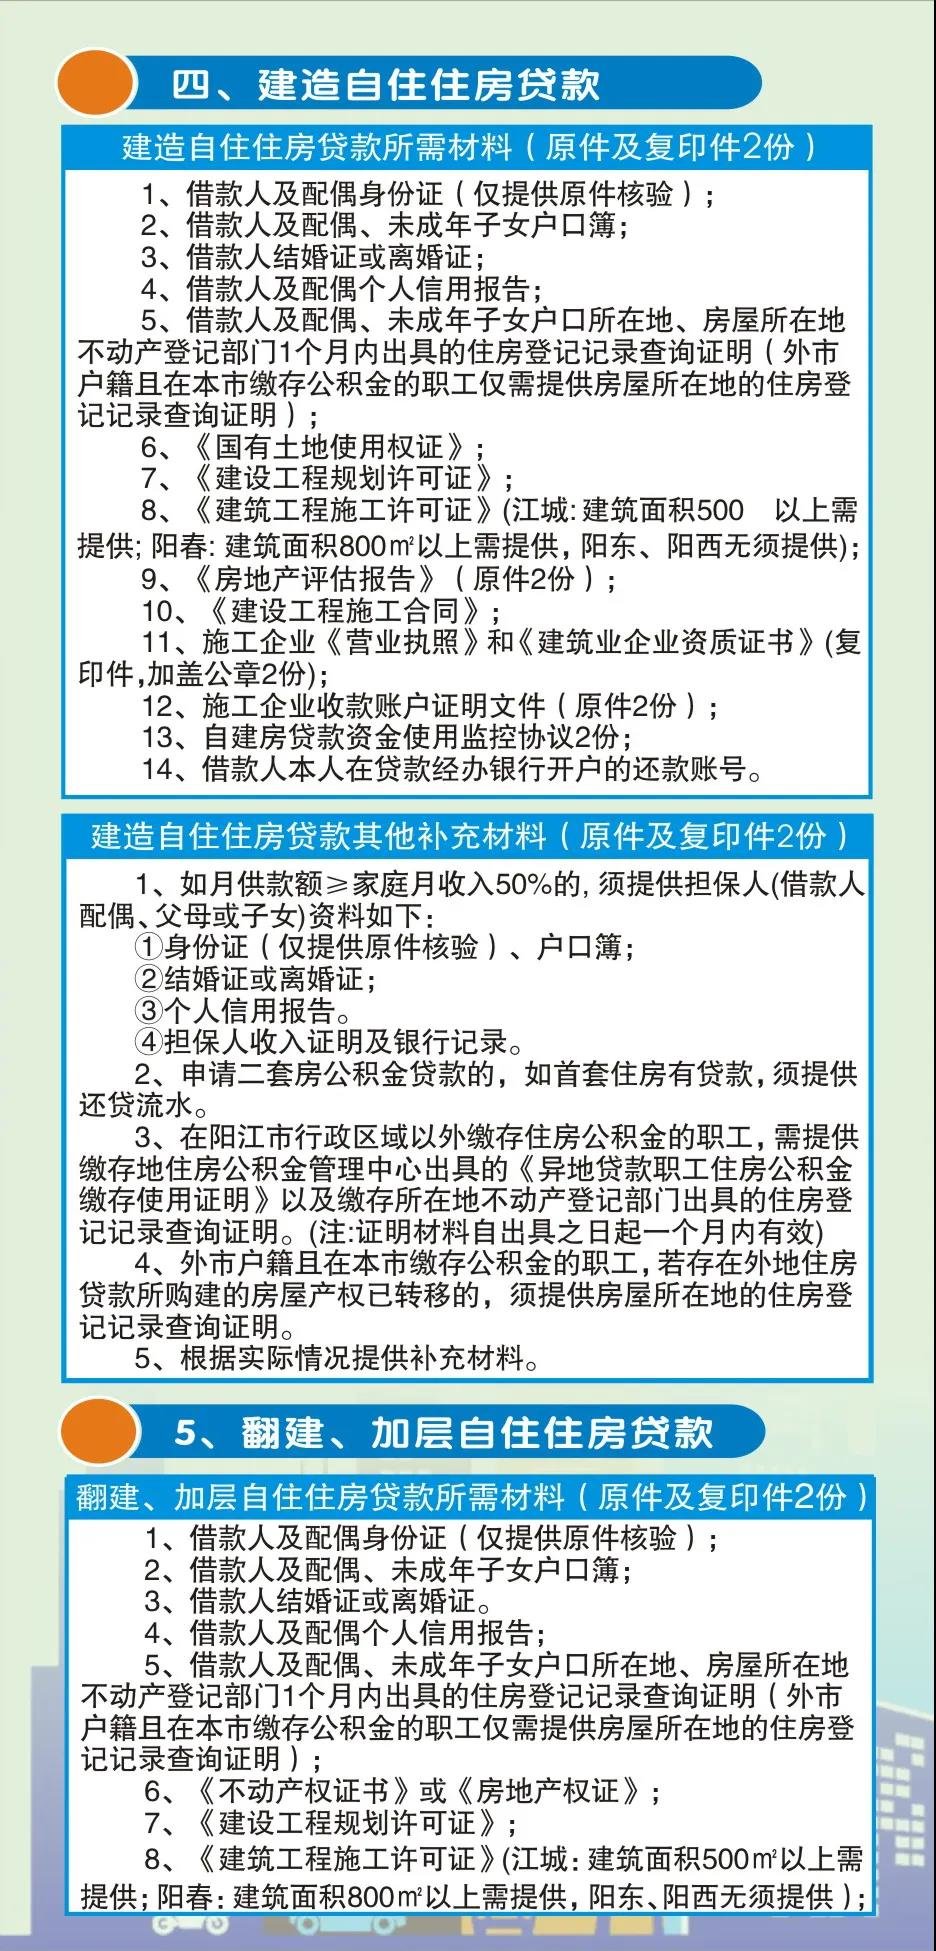 一张图读懂阳江市住房公积金贷款业务